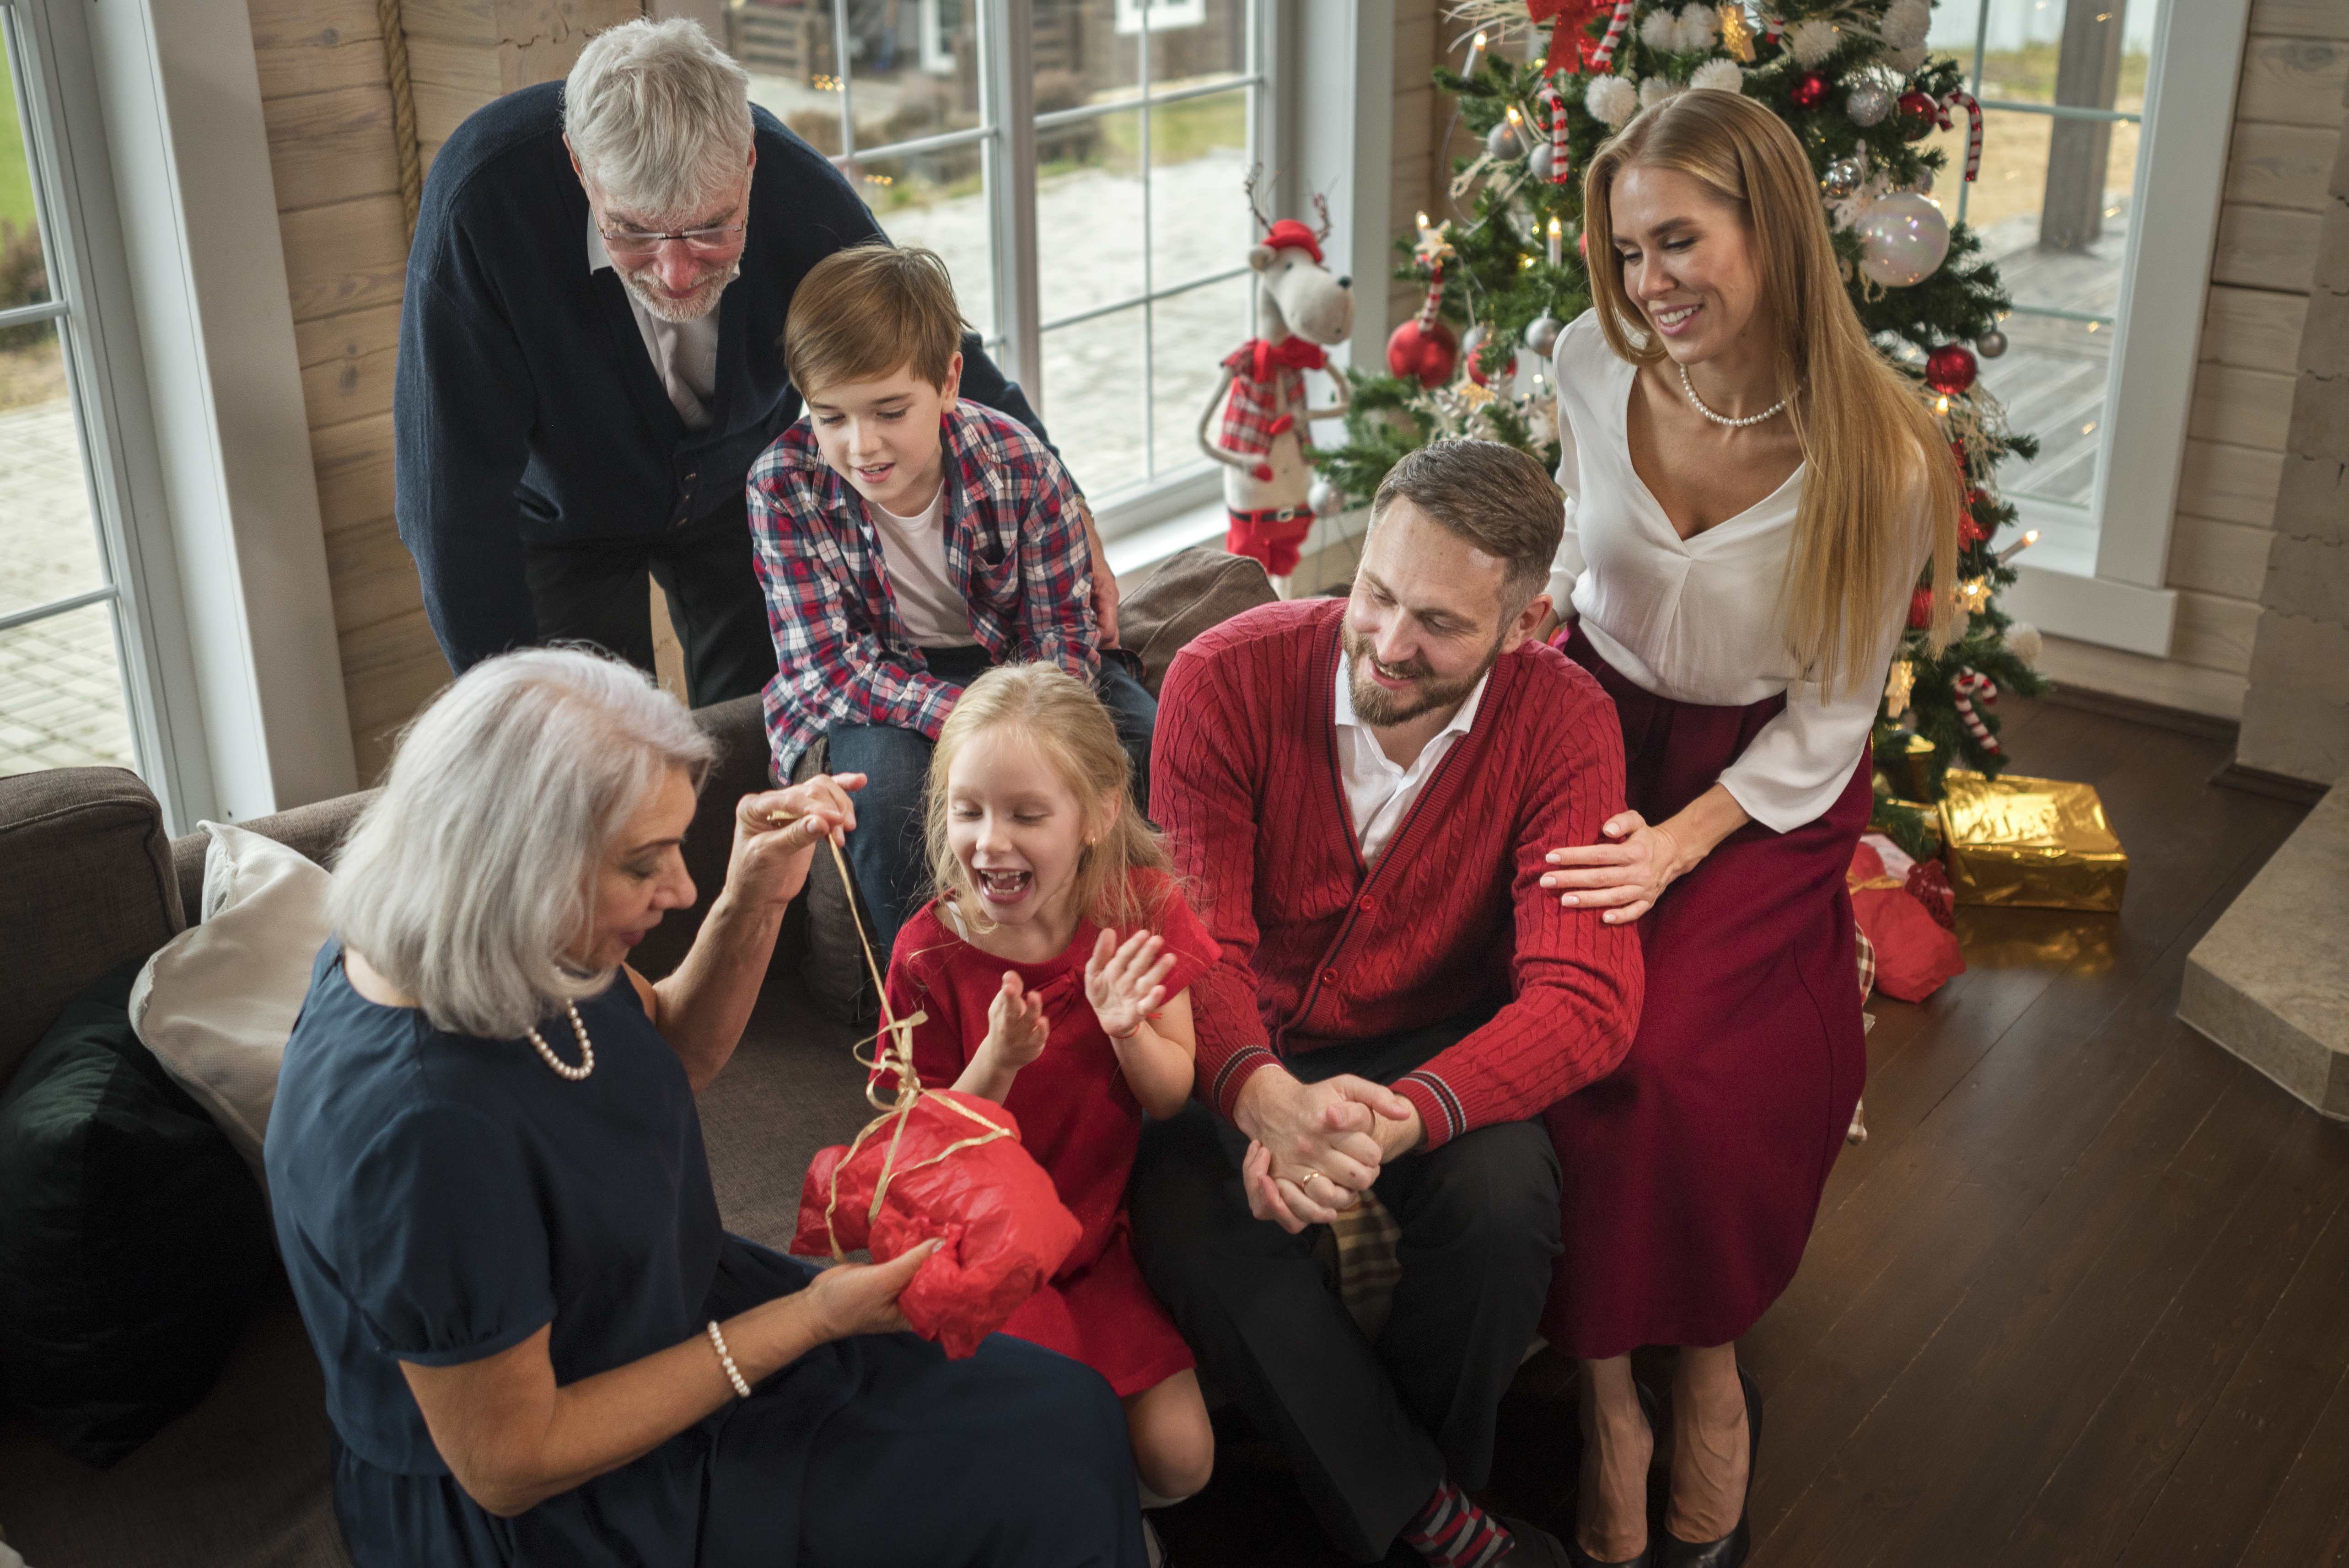 navidad con familia en reuniones navideñas